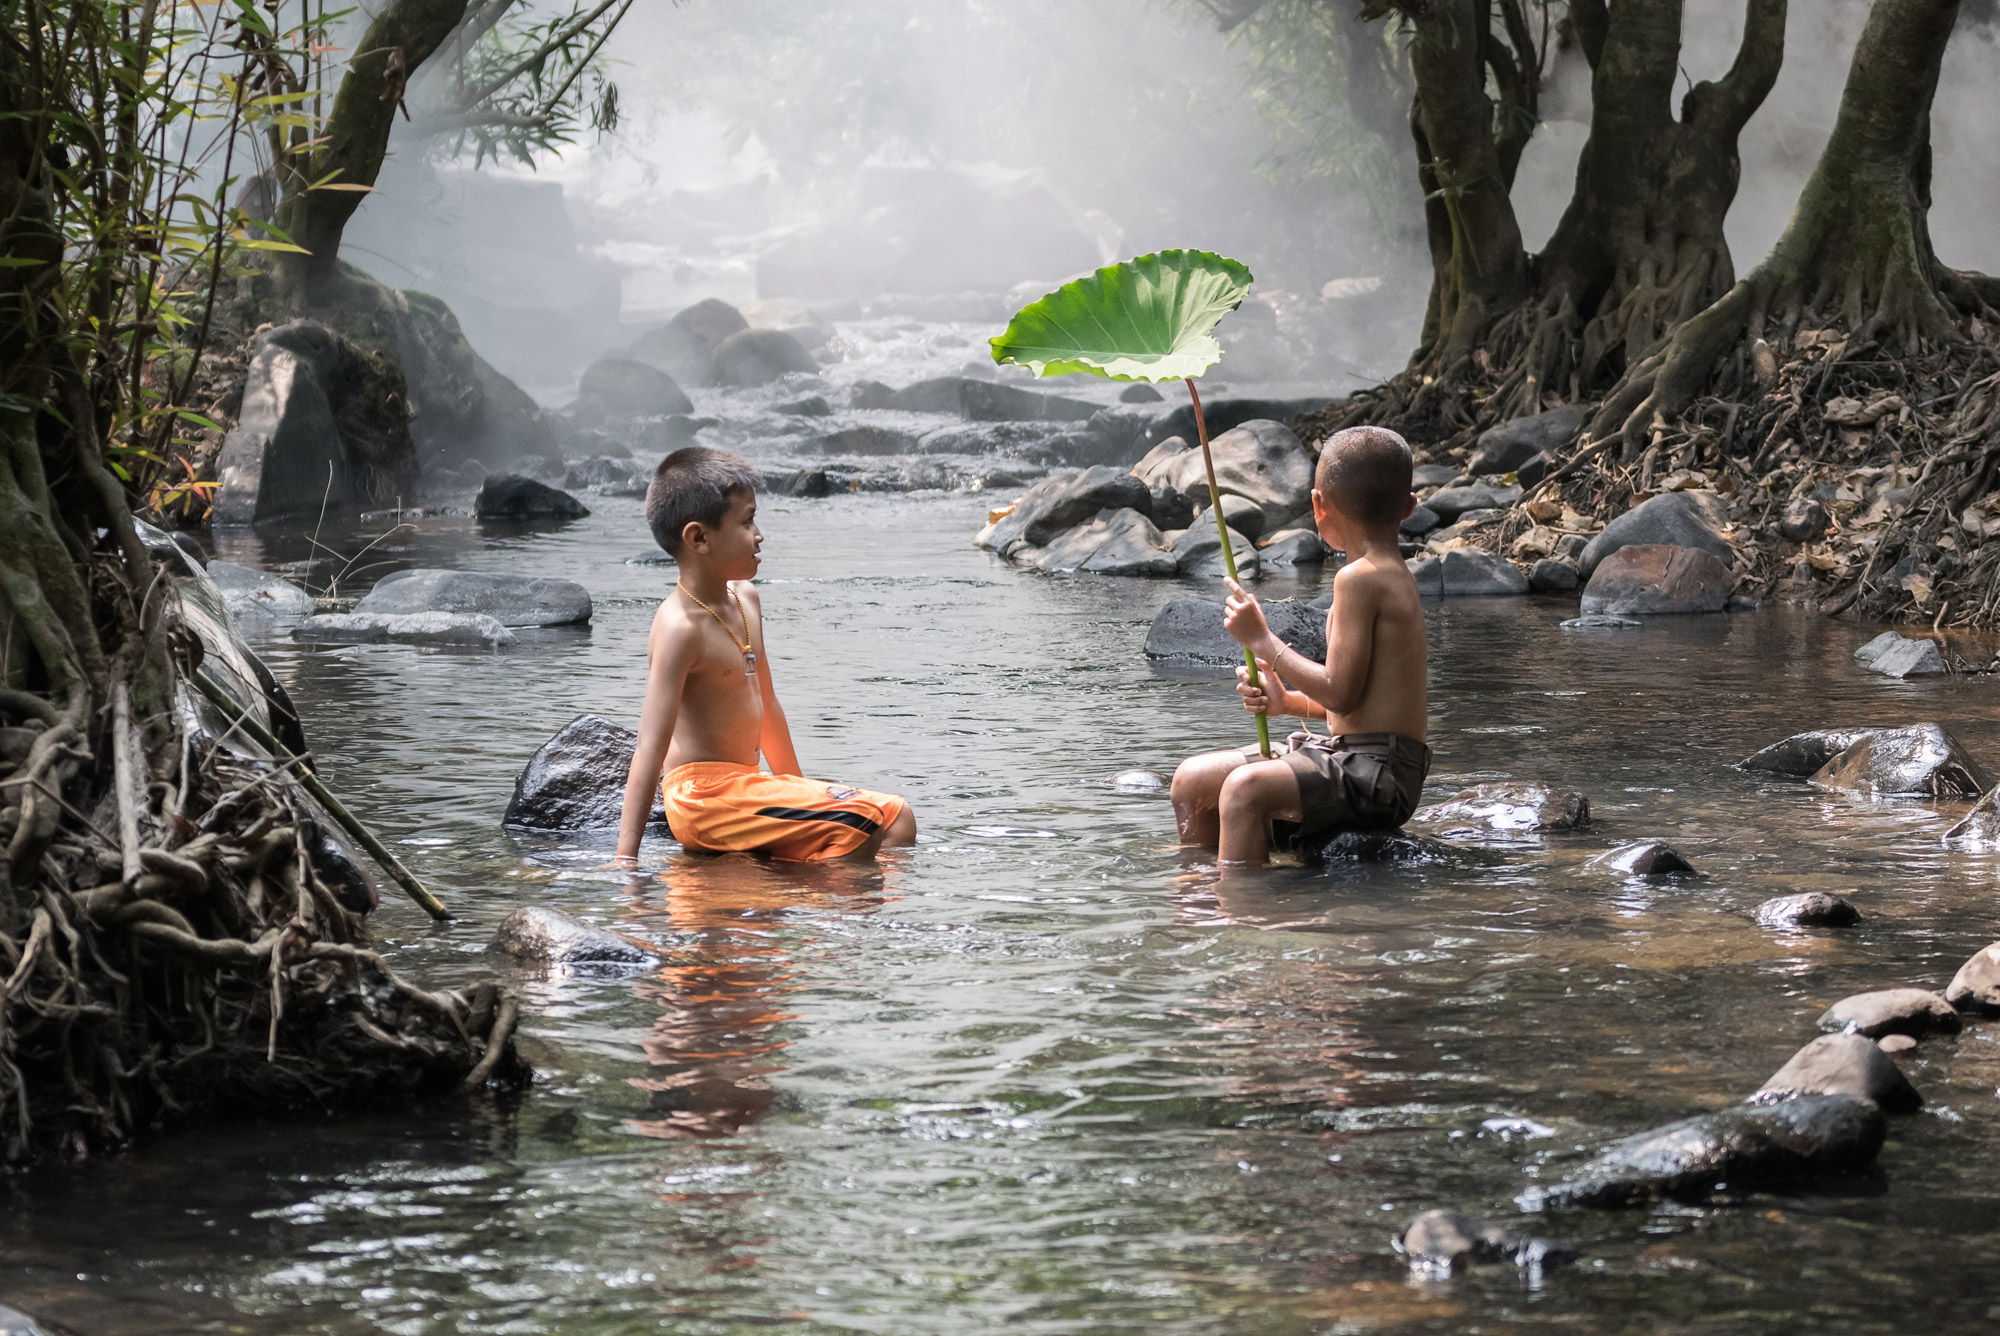 Botiquín para viajar a países tropicales ¿Qué llevar?: Bali